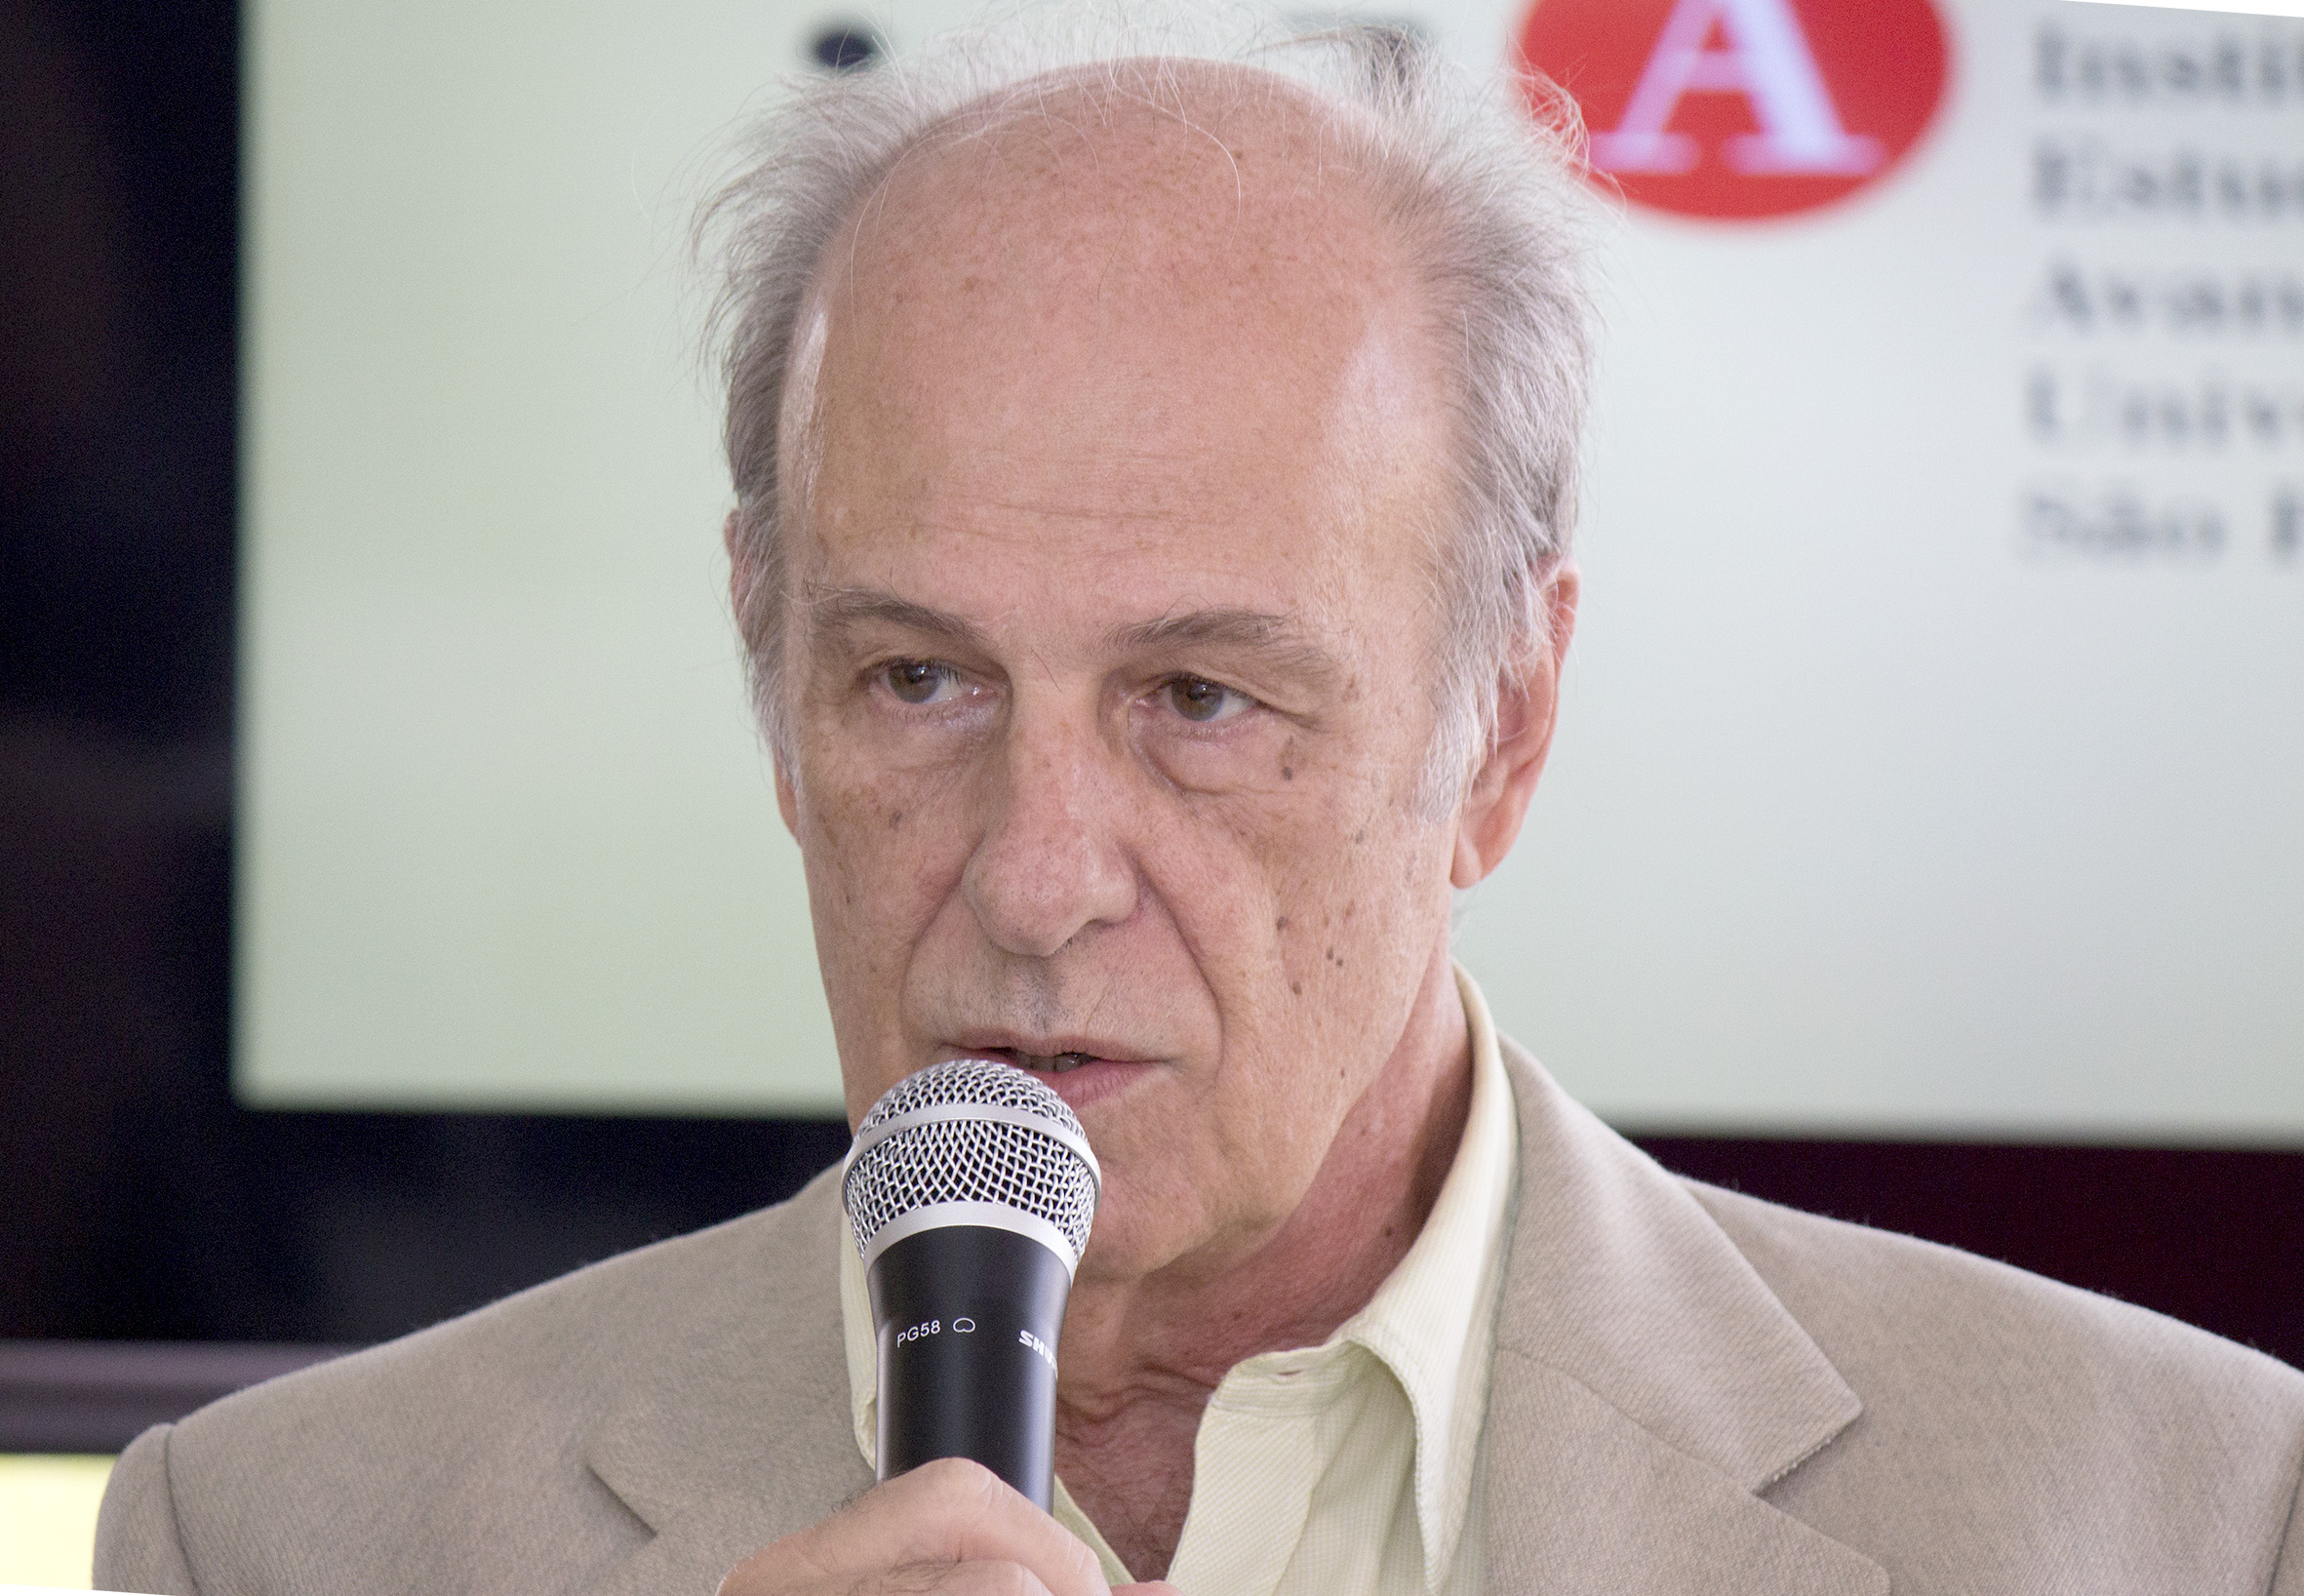 Luiz Bevilacqua